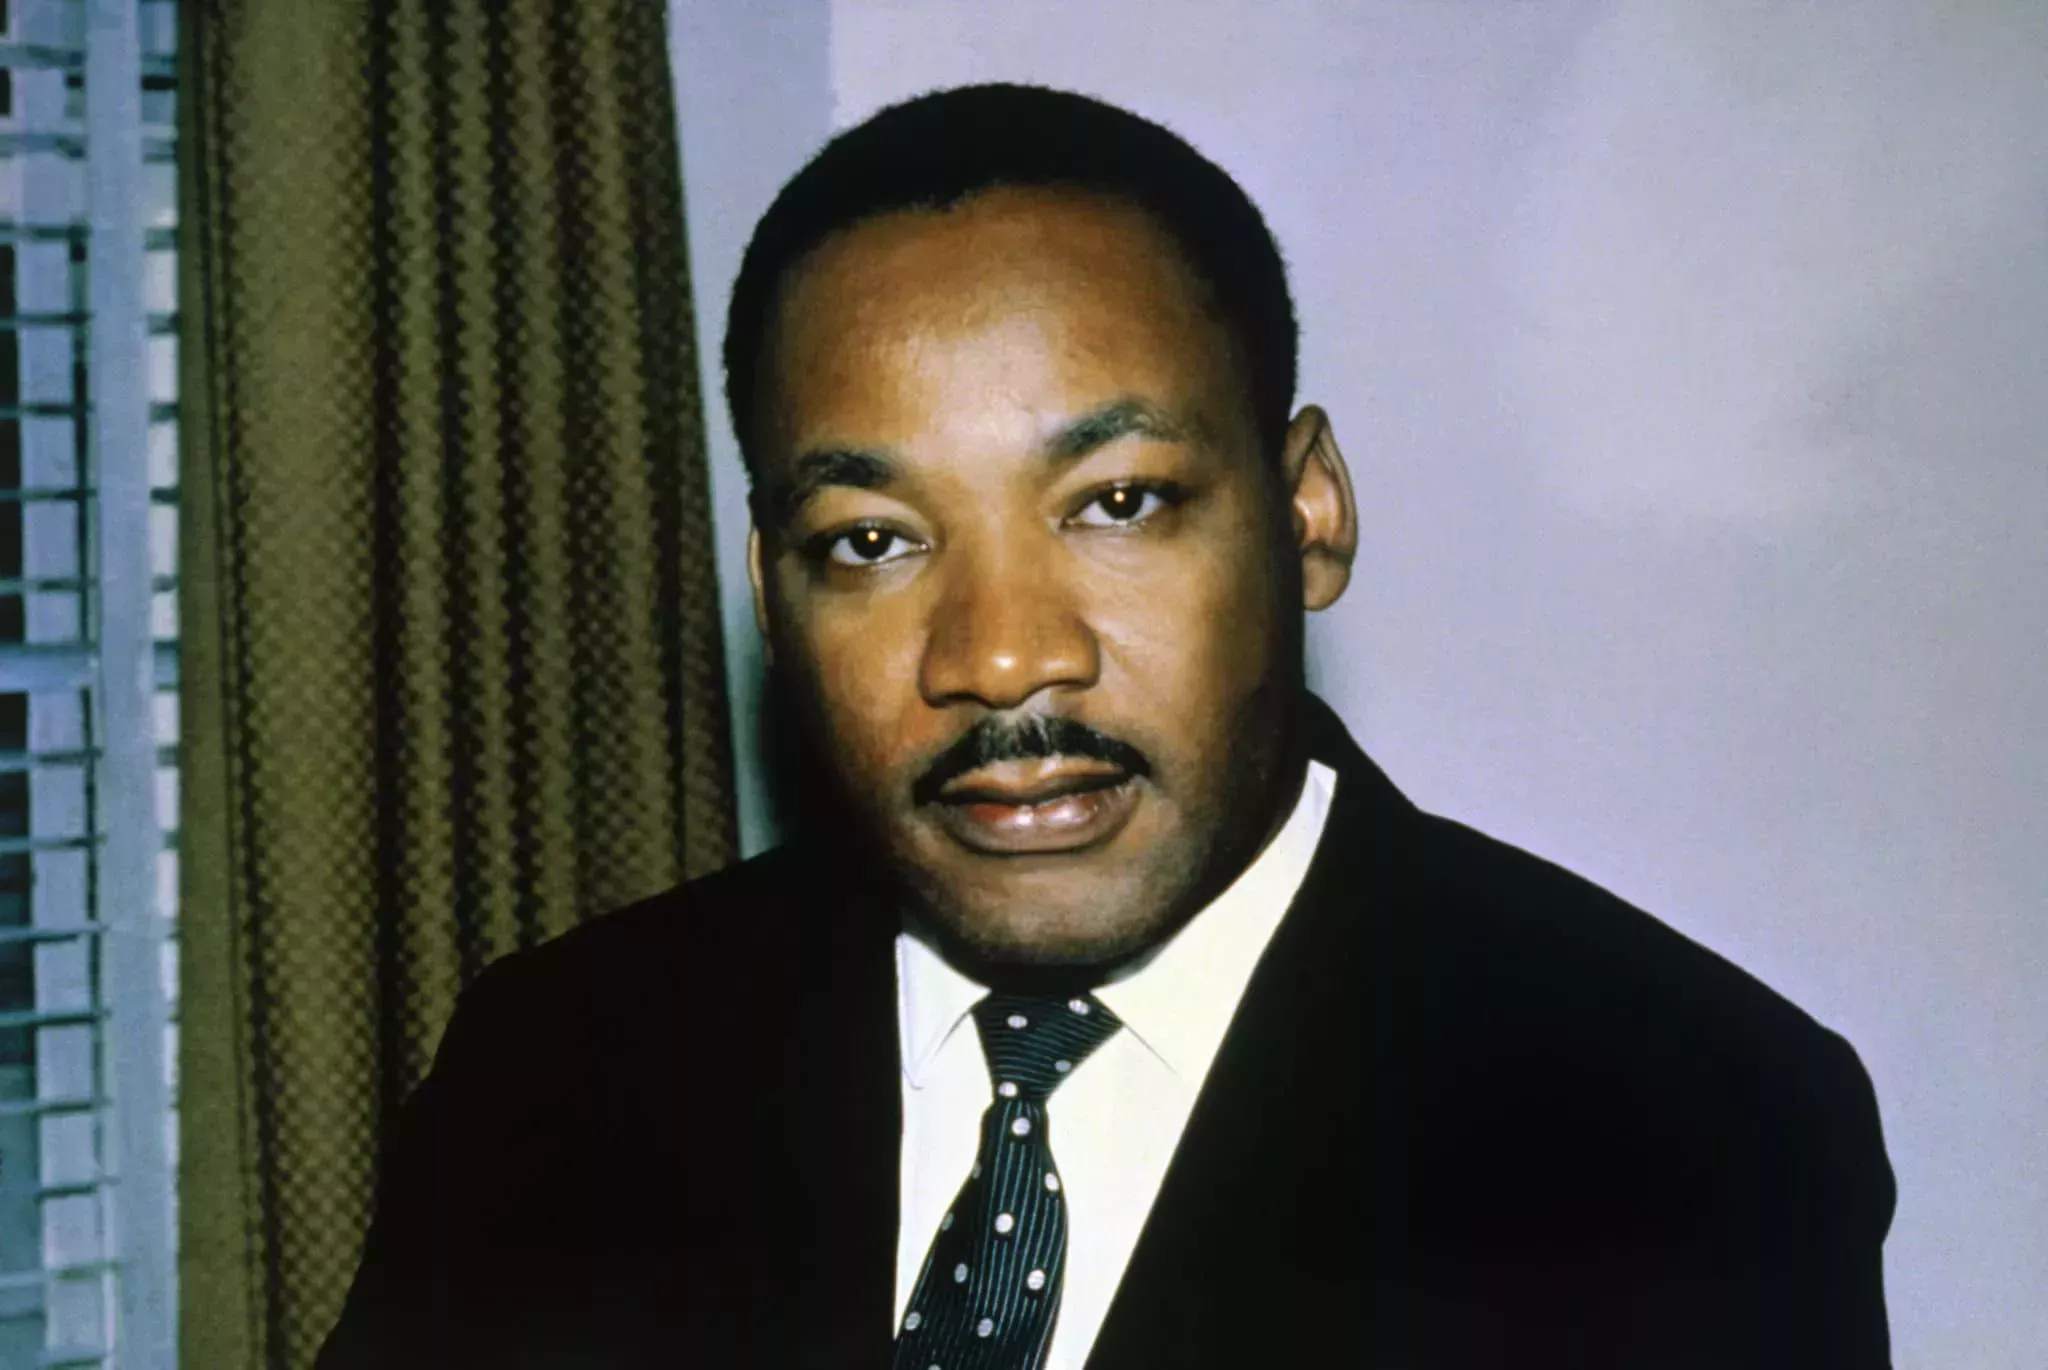 El sueño de Martin Luther King Jr incluía sin duda a las personas LGBTQ+, dicen quienes le conocieron y le quisieron